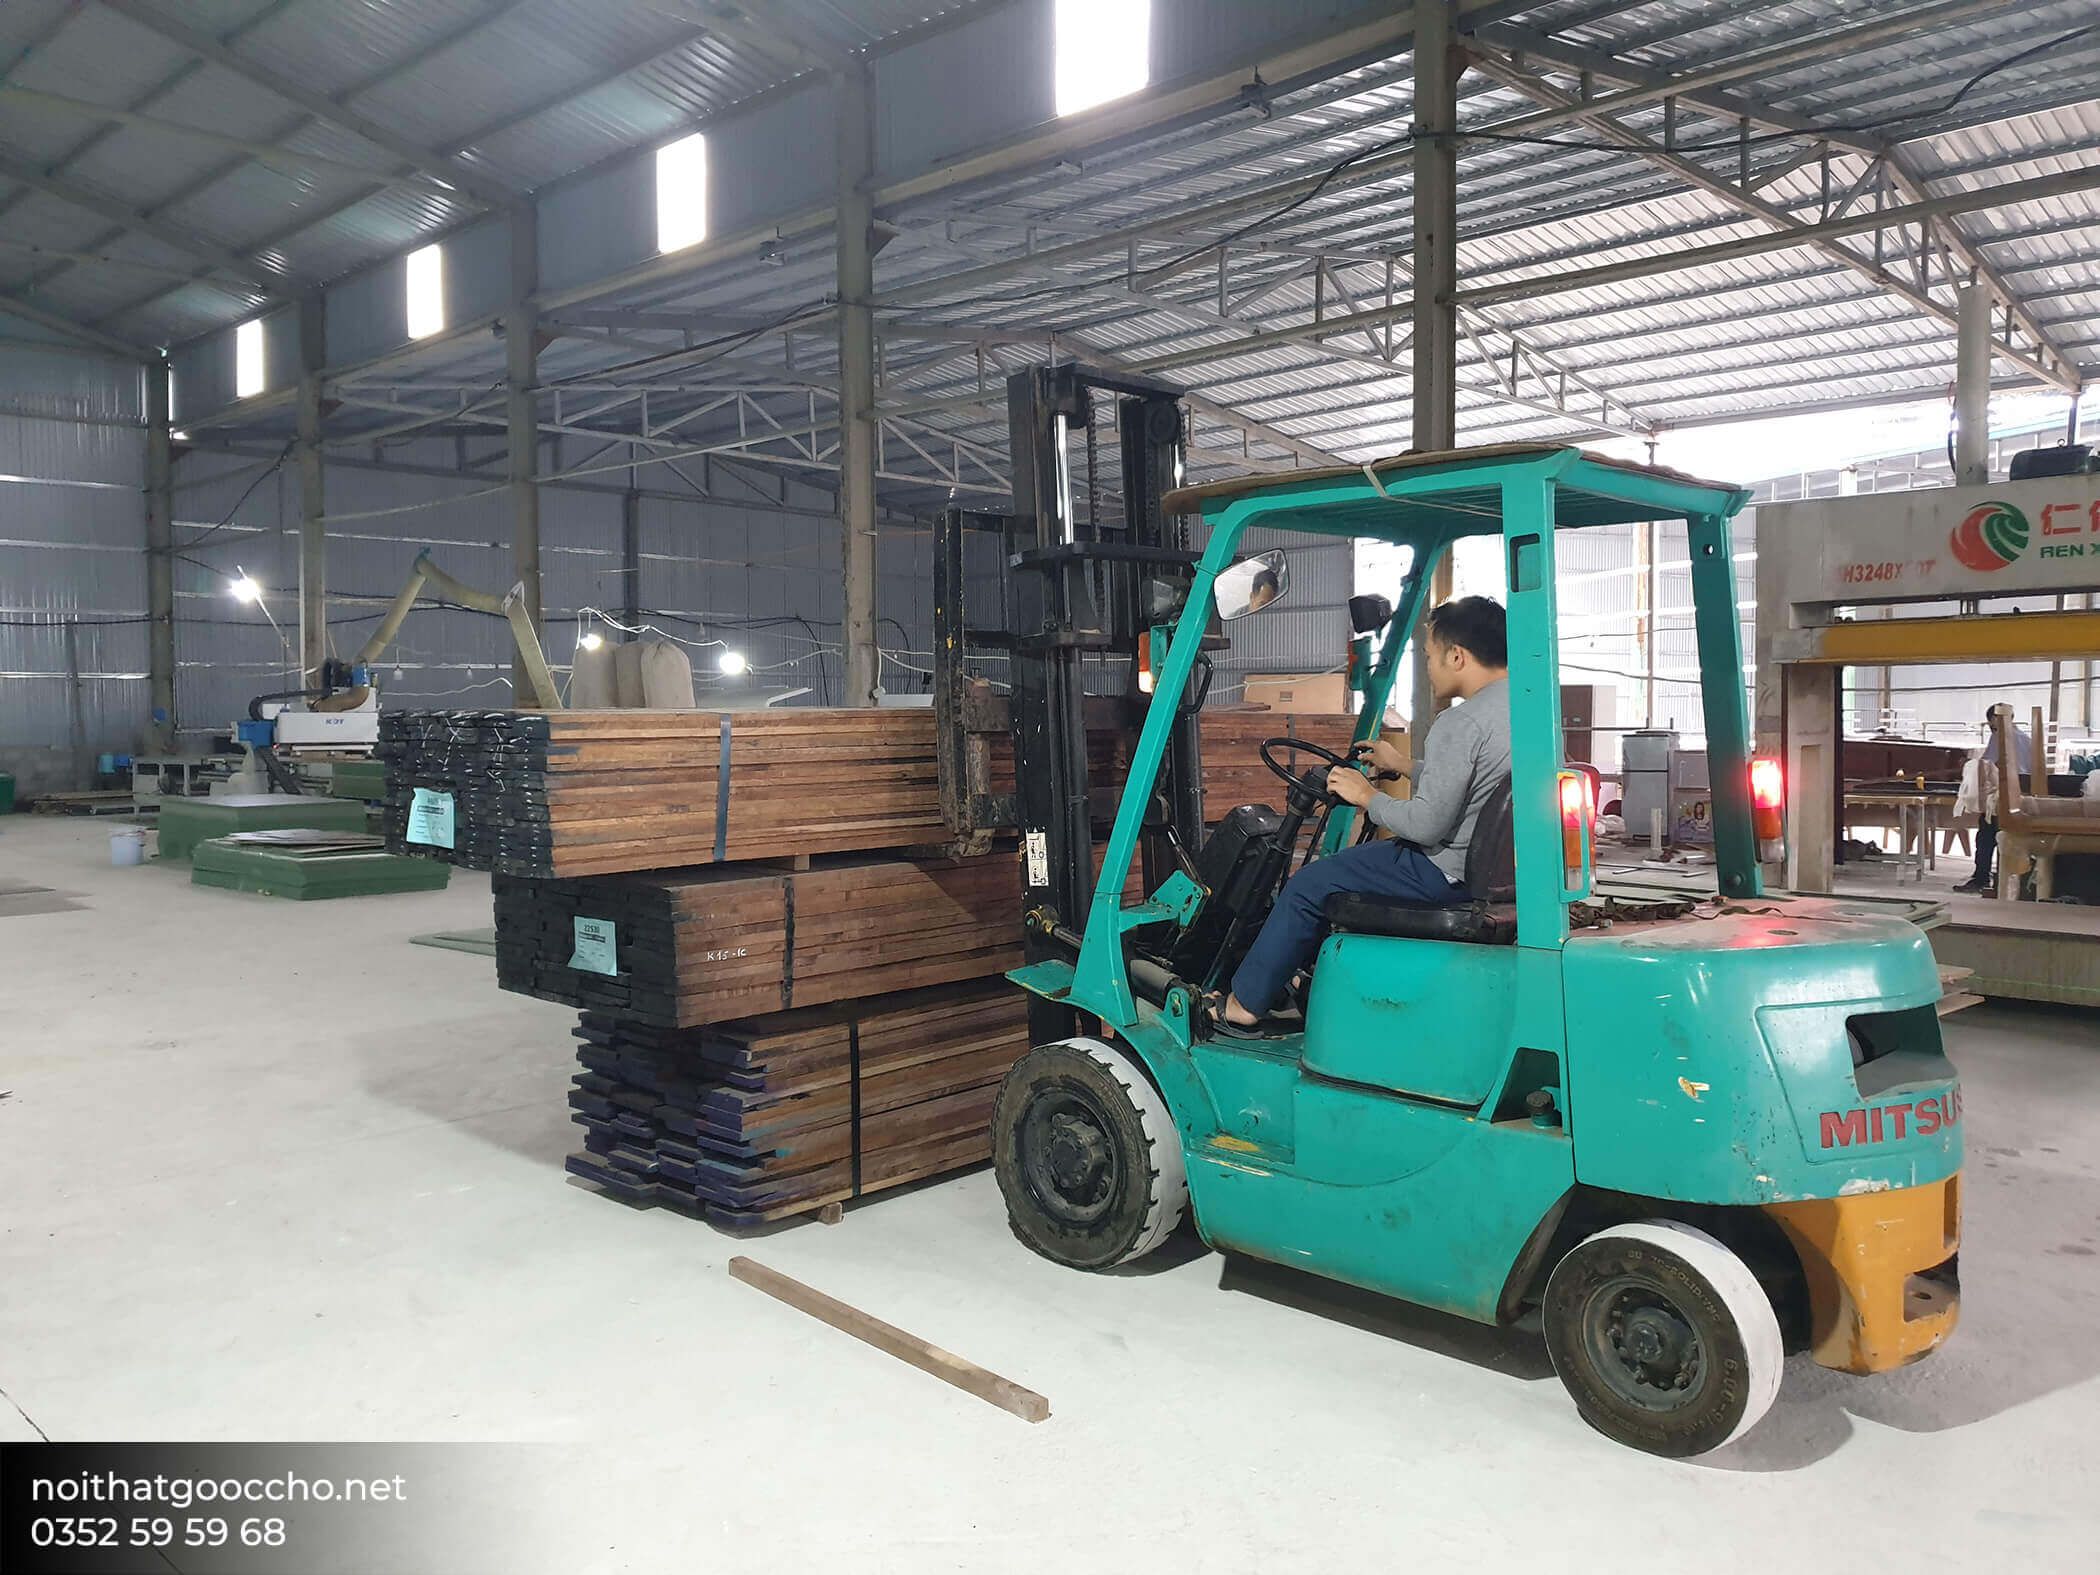 Đơn vị thi công nội thất gỗ công nghiệp nào uy tín ở Hà Nội?